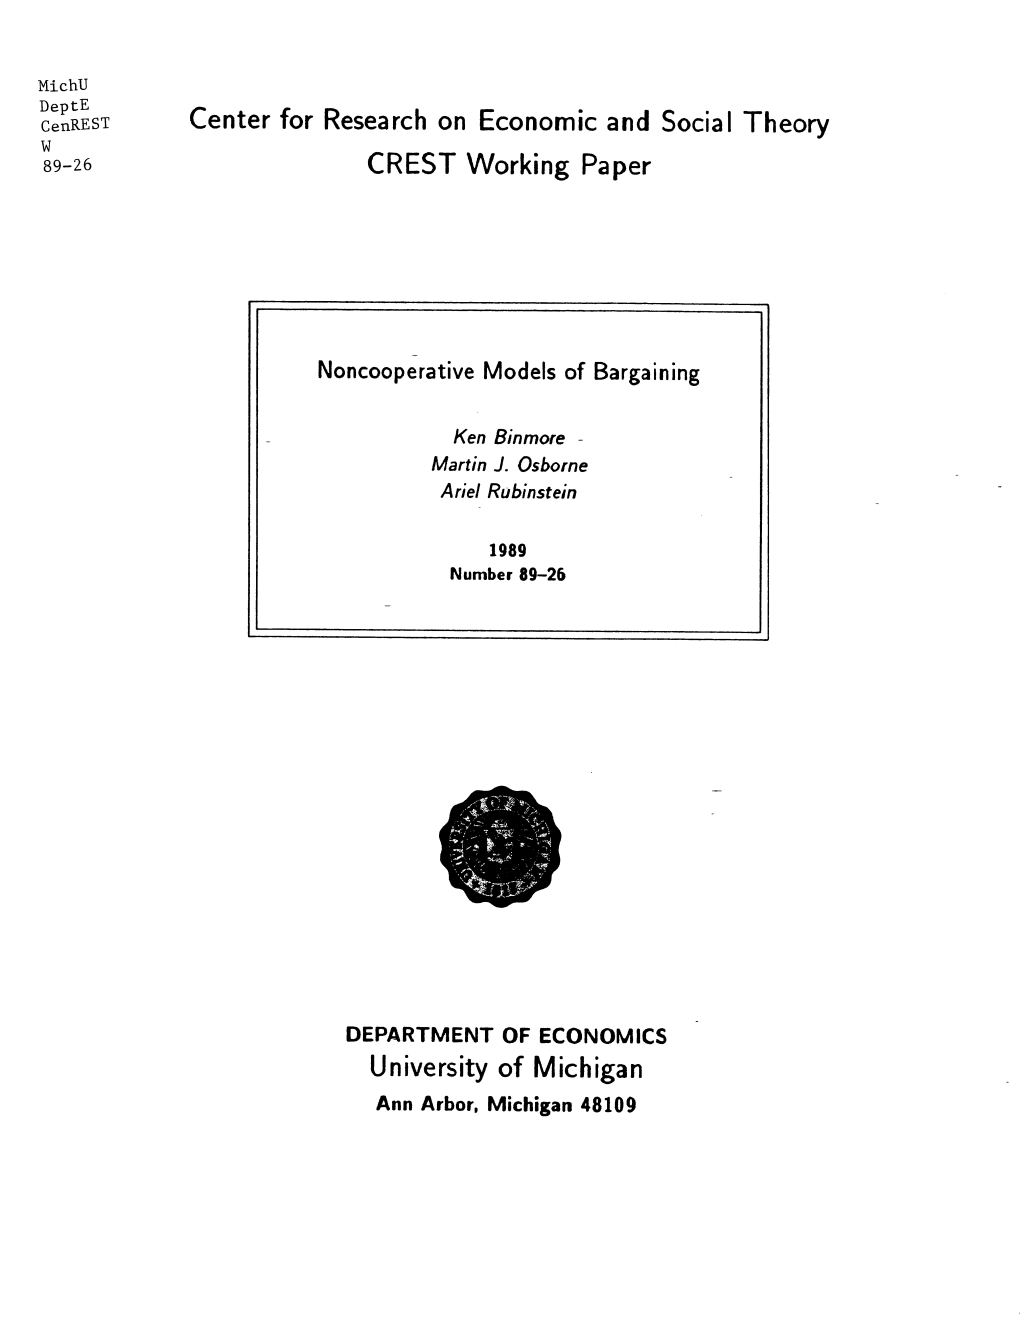 CREST Working Paper